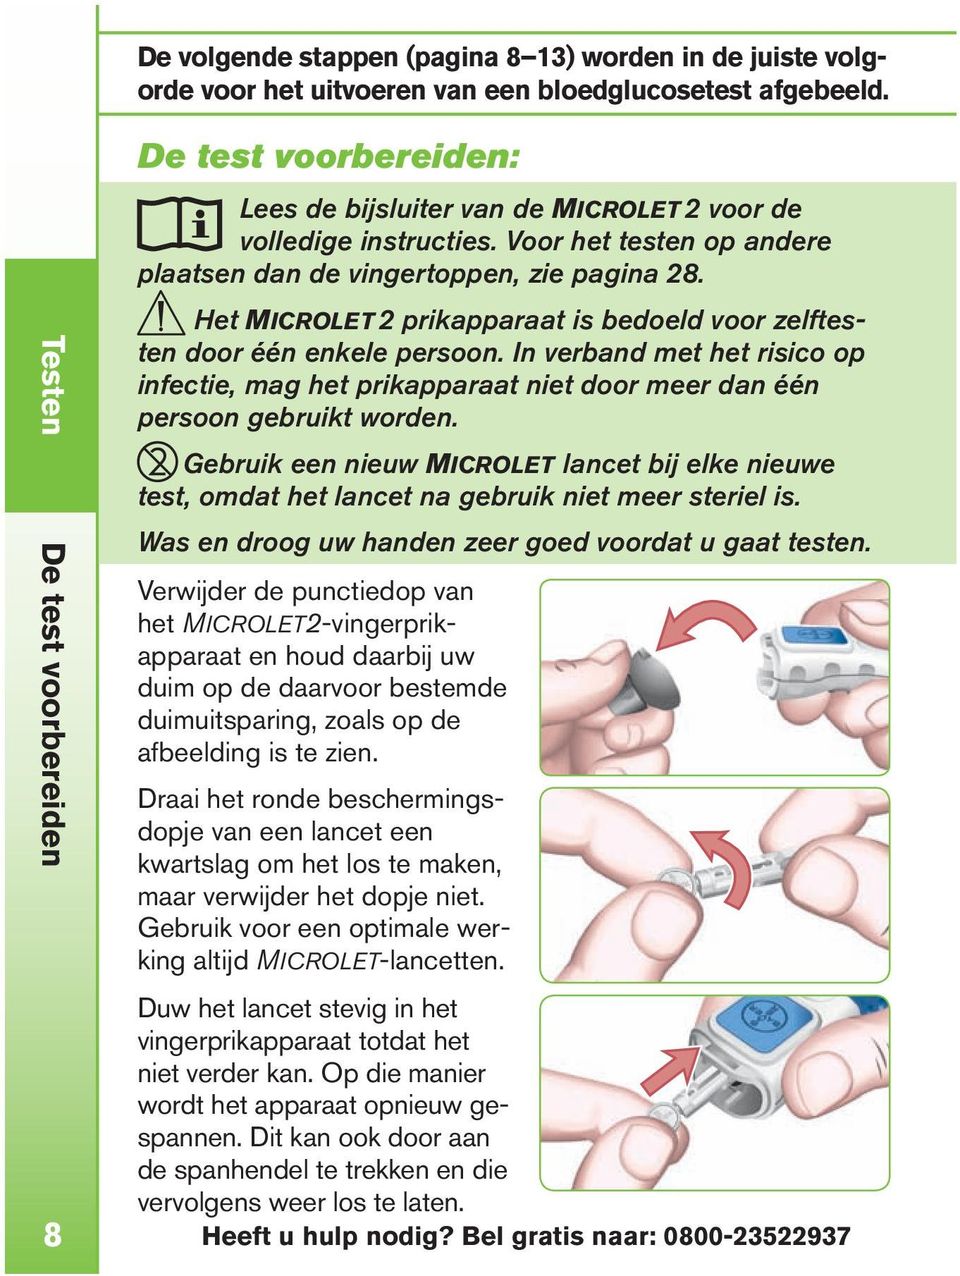 Het Microlet 2 prikapparaat is bedoeld voor zelftesten door één enkele persoon. In verband met het risico op infectie, mag het prikapparaat niet door meer dan één persoon gebruikt worden.